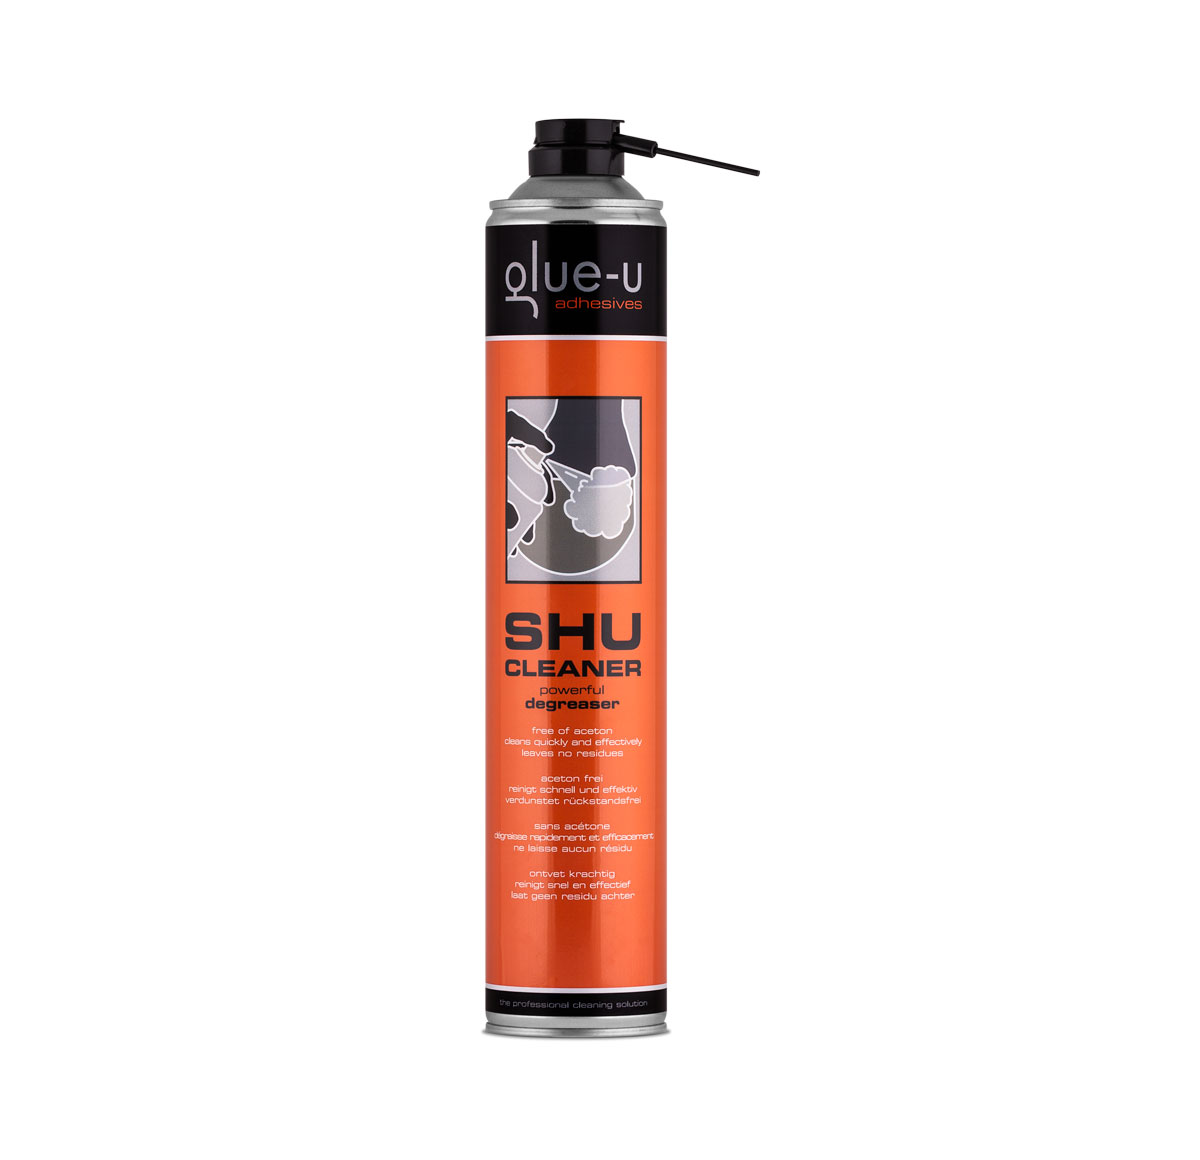 Glue-u Shu Cleaner aceton free